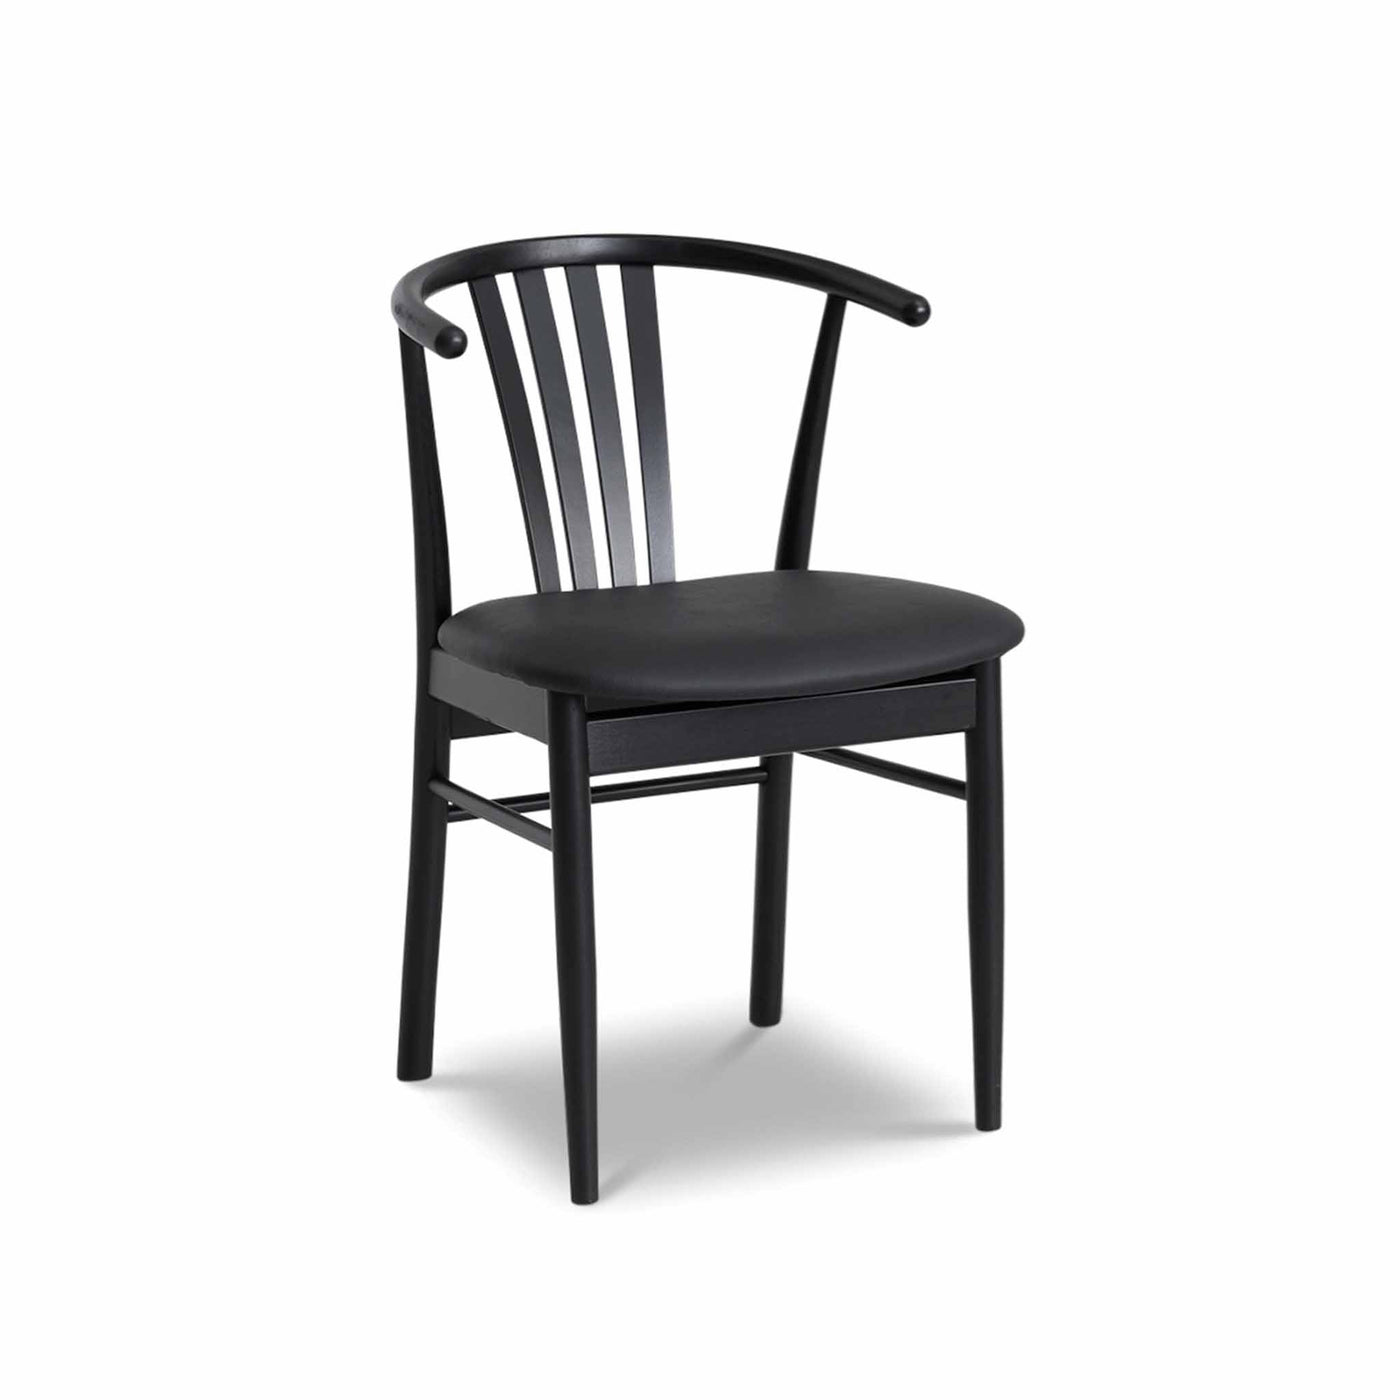 Svane Design Salon spisebordsstol i sortbejdset bøg med sort sæde i tekstillæder.